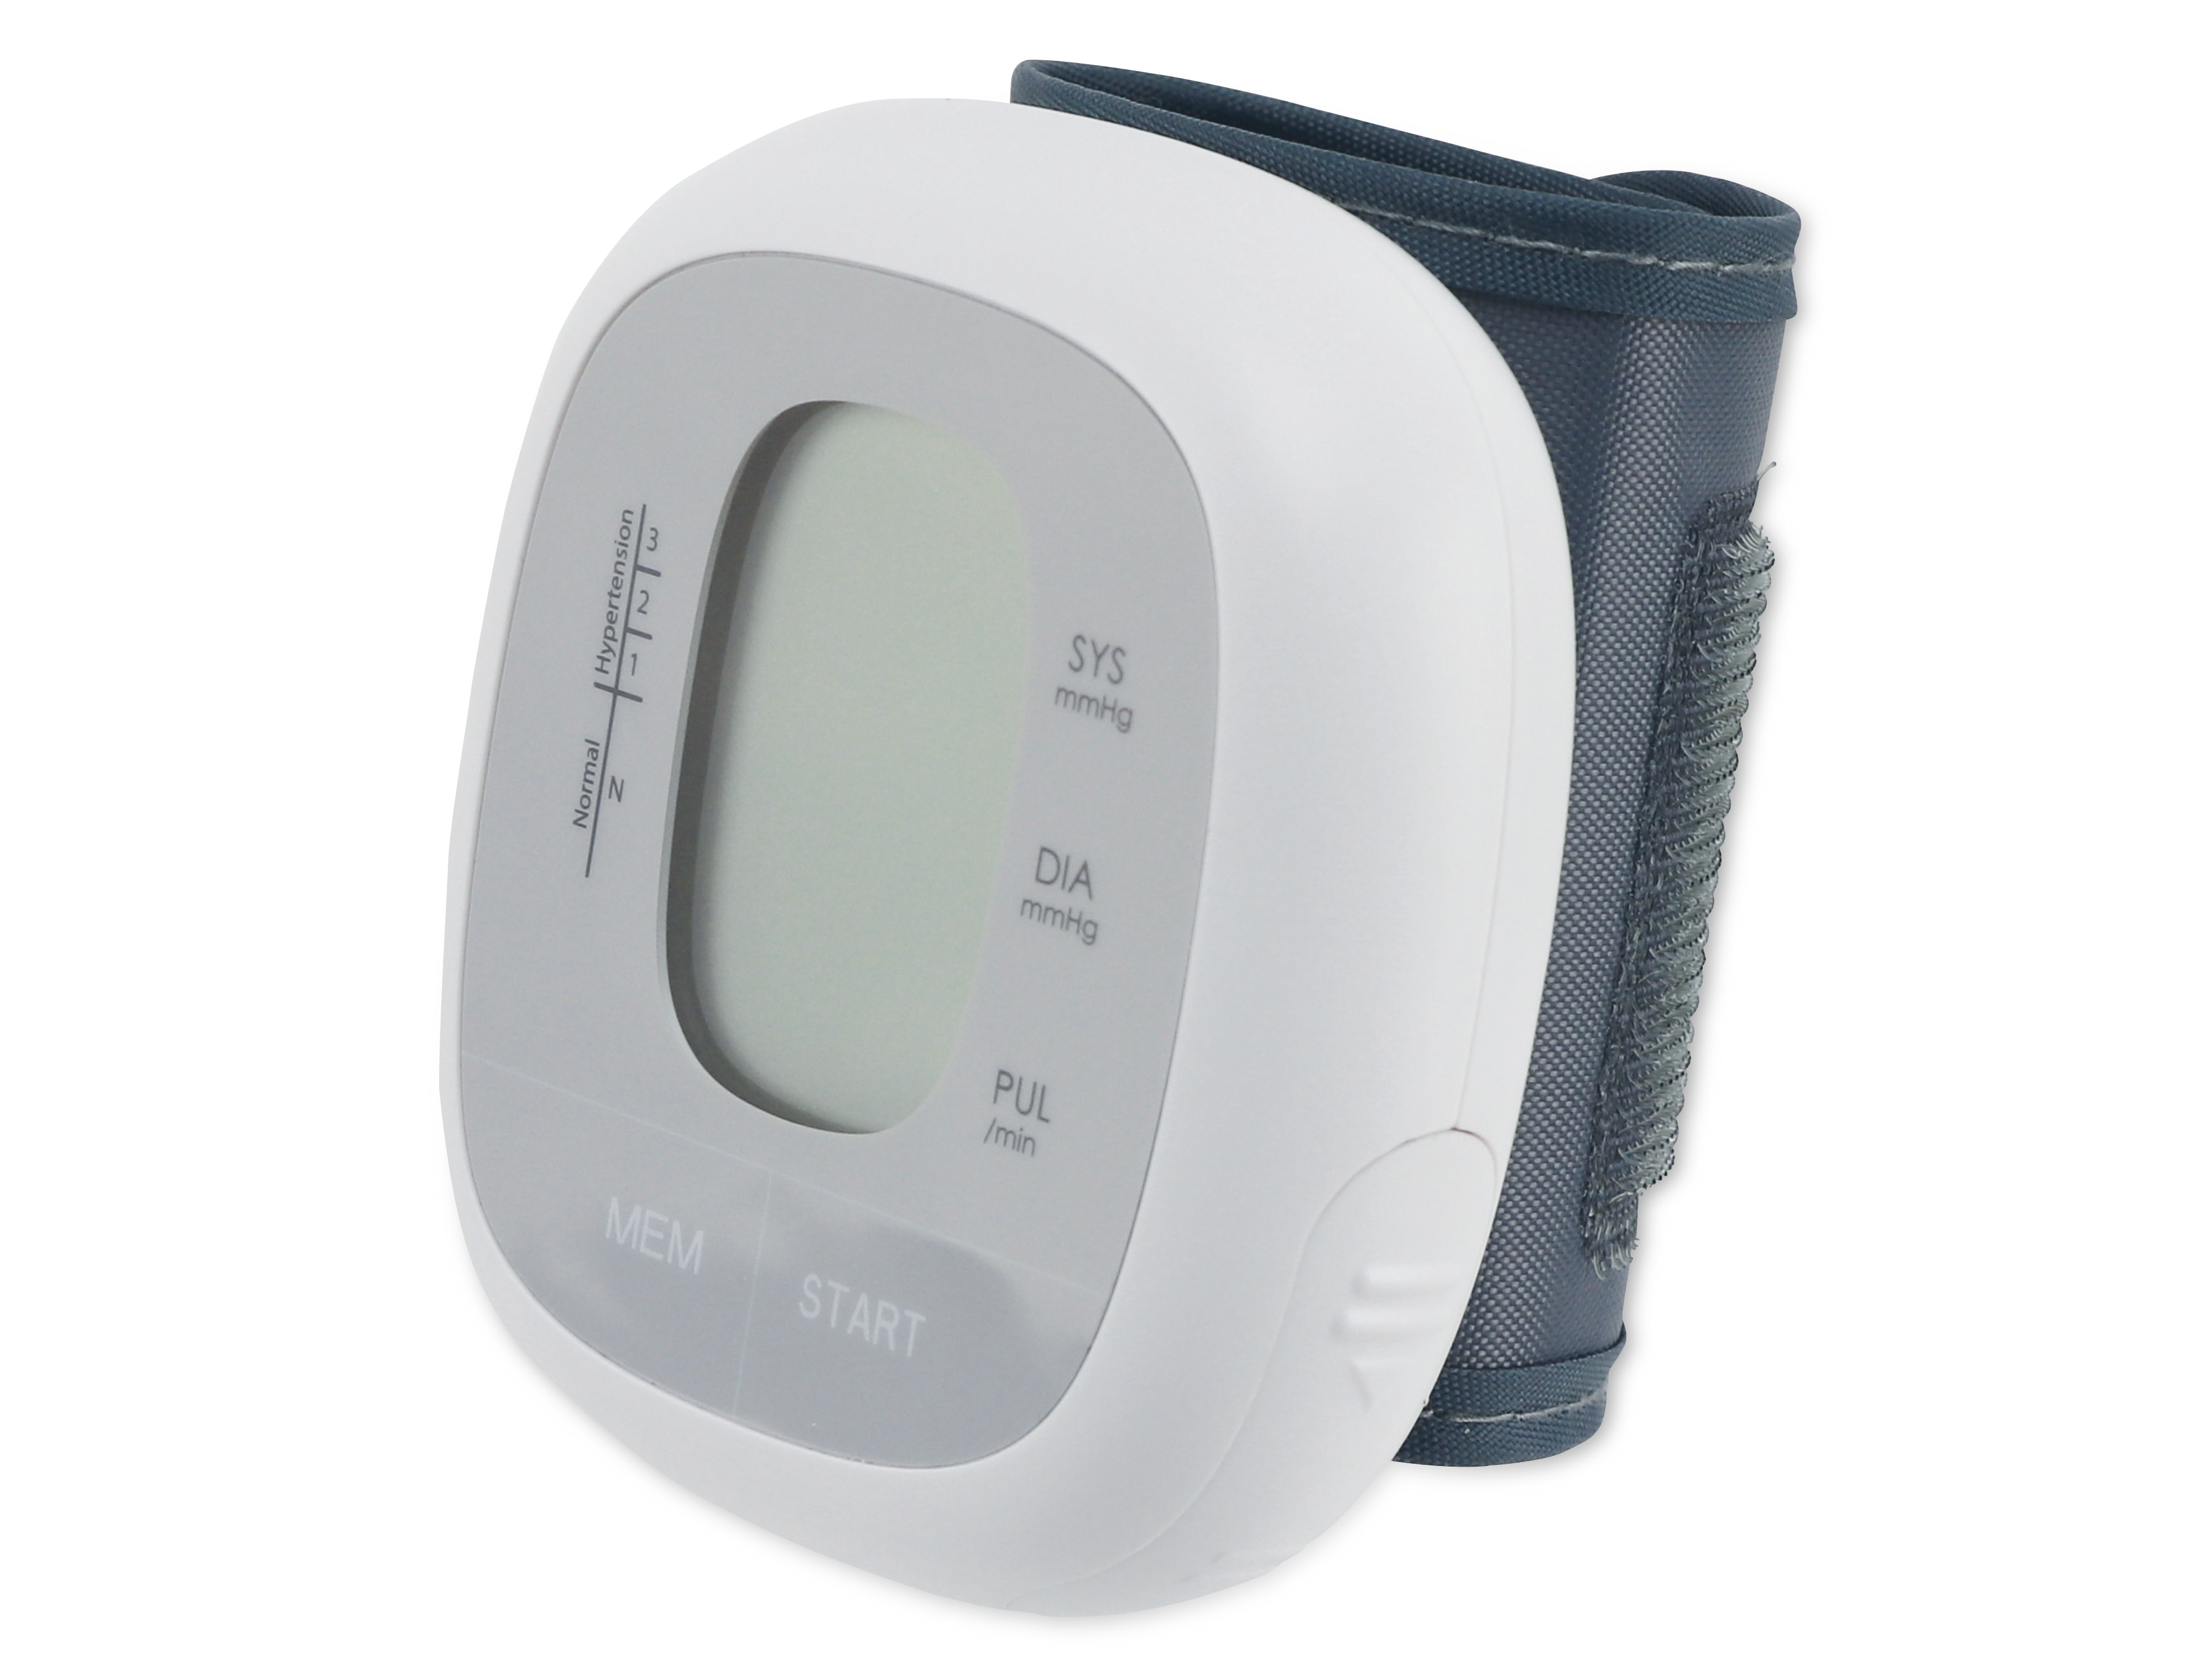 GRUNDIG Blutdruckmessgerät inkl. Batterien, grau-weiß